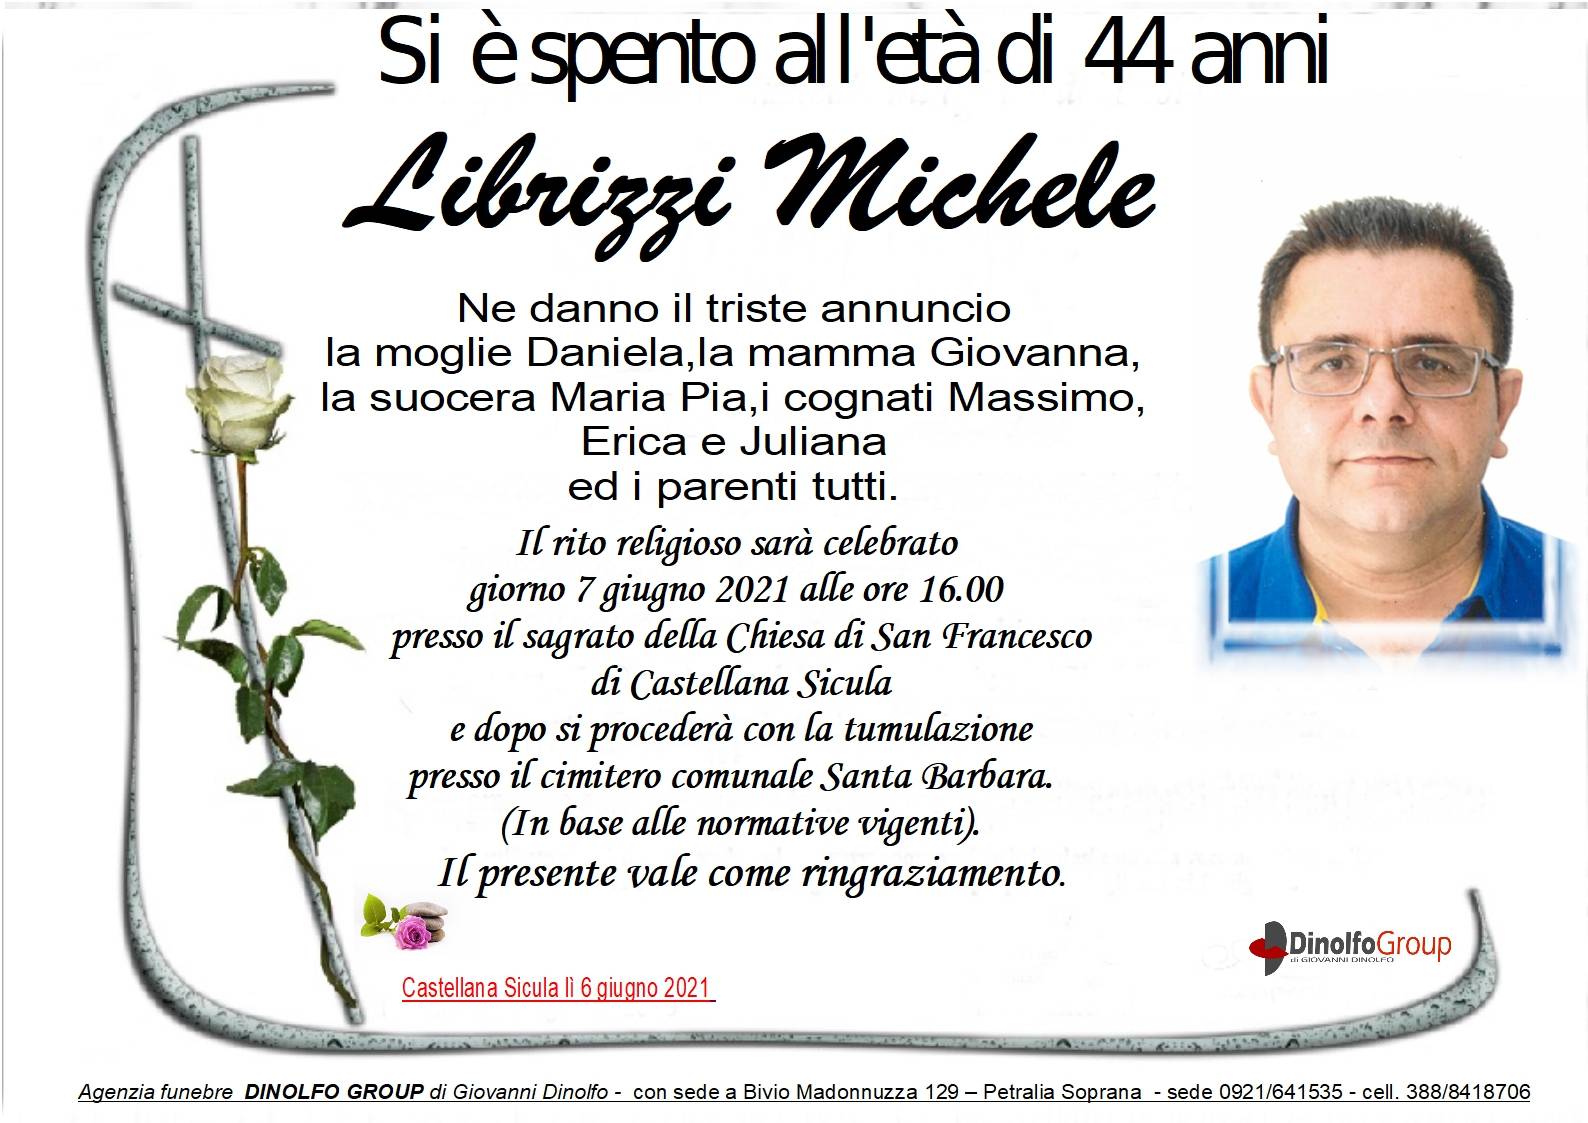 Michele Librizzi